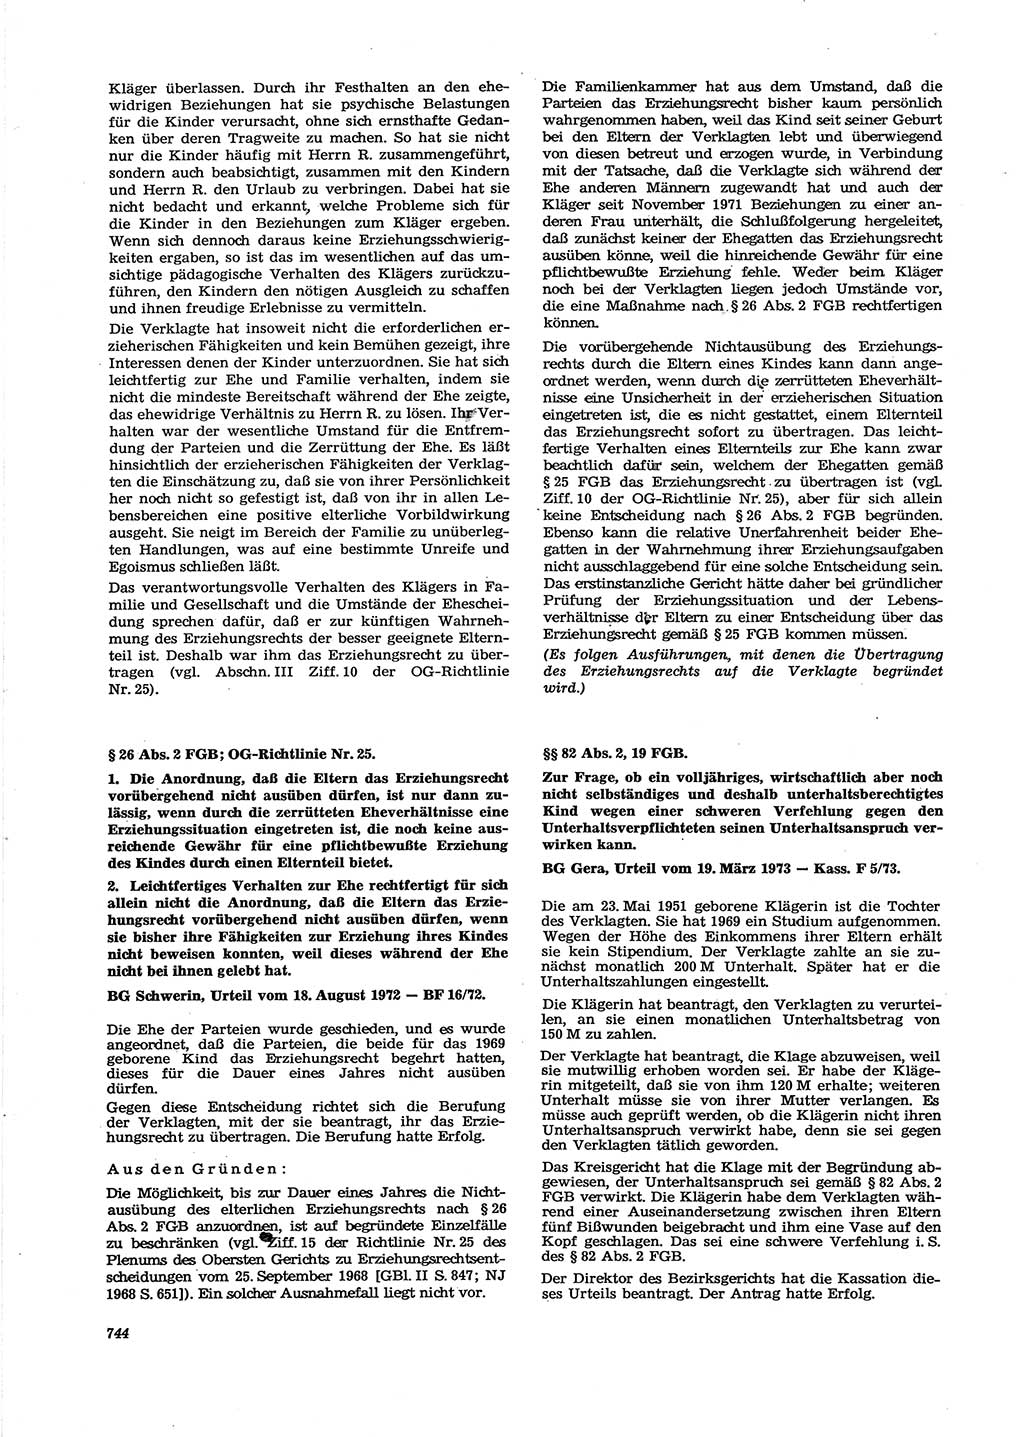 Neue Justiz (NJ), Zeitschrift für Recht und Rechtswissenschaft [Deutsche Demokratische Republik (DDR)], 27. Jahrgang 1973, Seite 744 (NJ DDR 1973, S. 744)